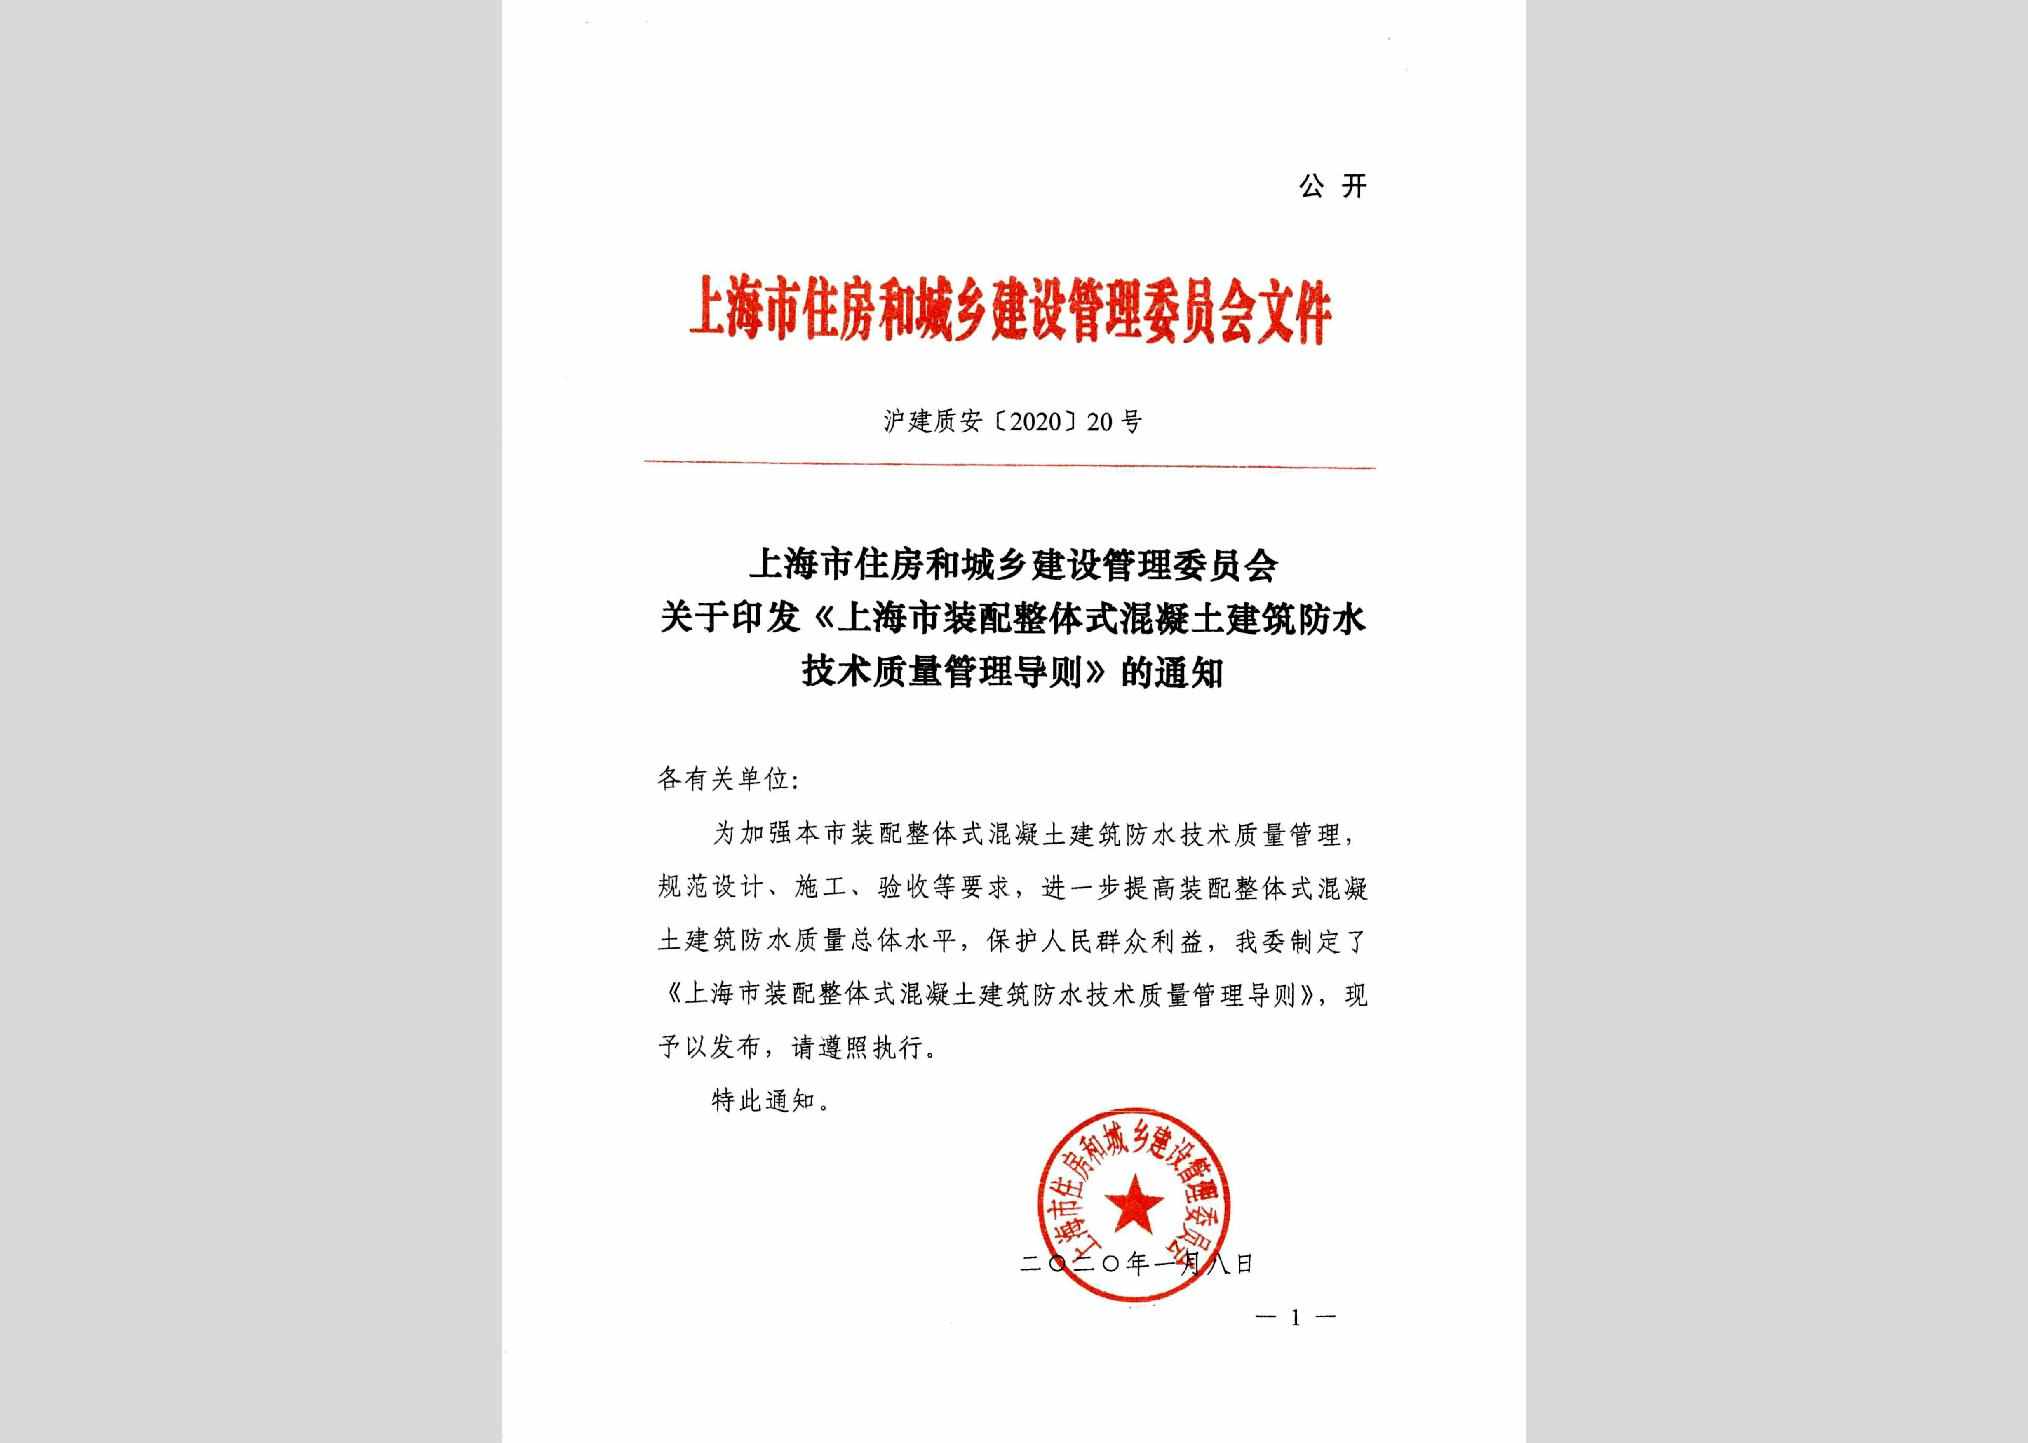 沪建质安[2020]20号：上海市住房和城乡建设管理委员会关于印发《上海市装配整体式混凝土建筑防水技术质量管理导则》的通知